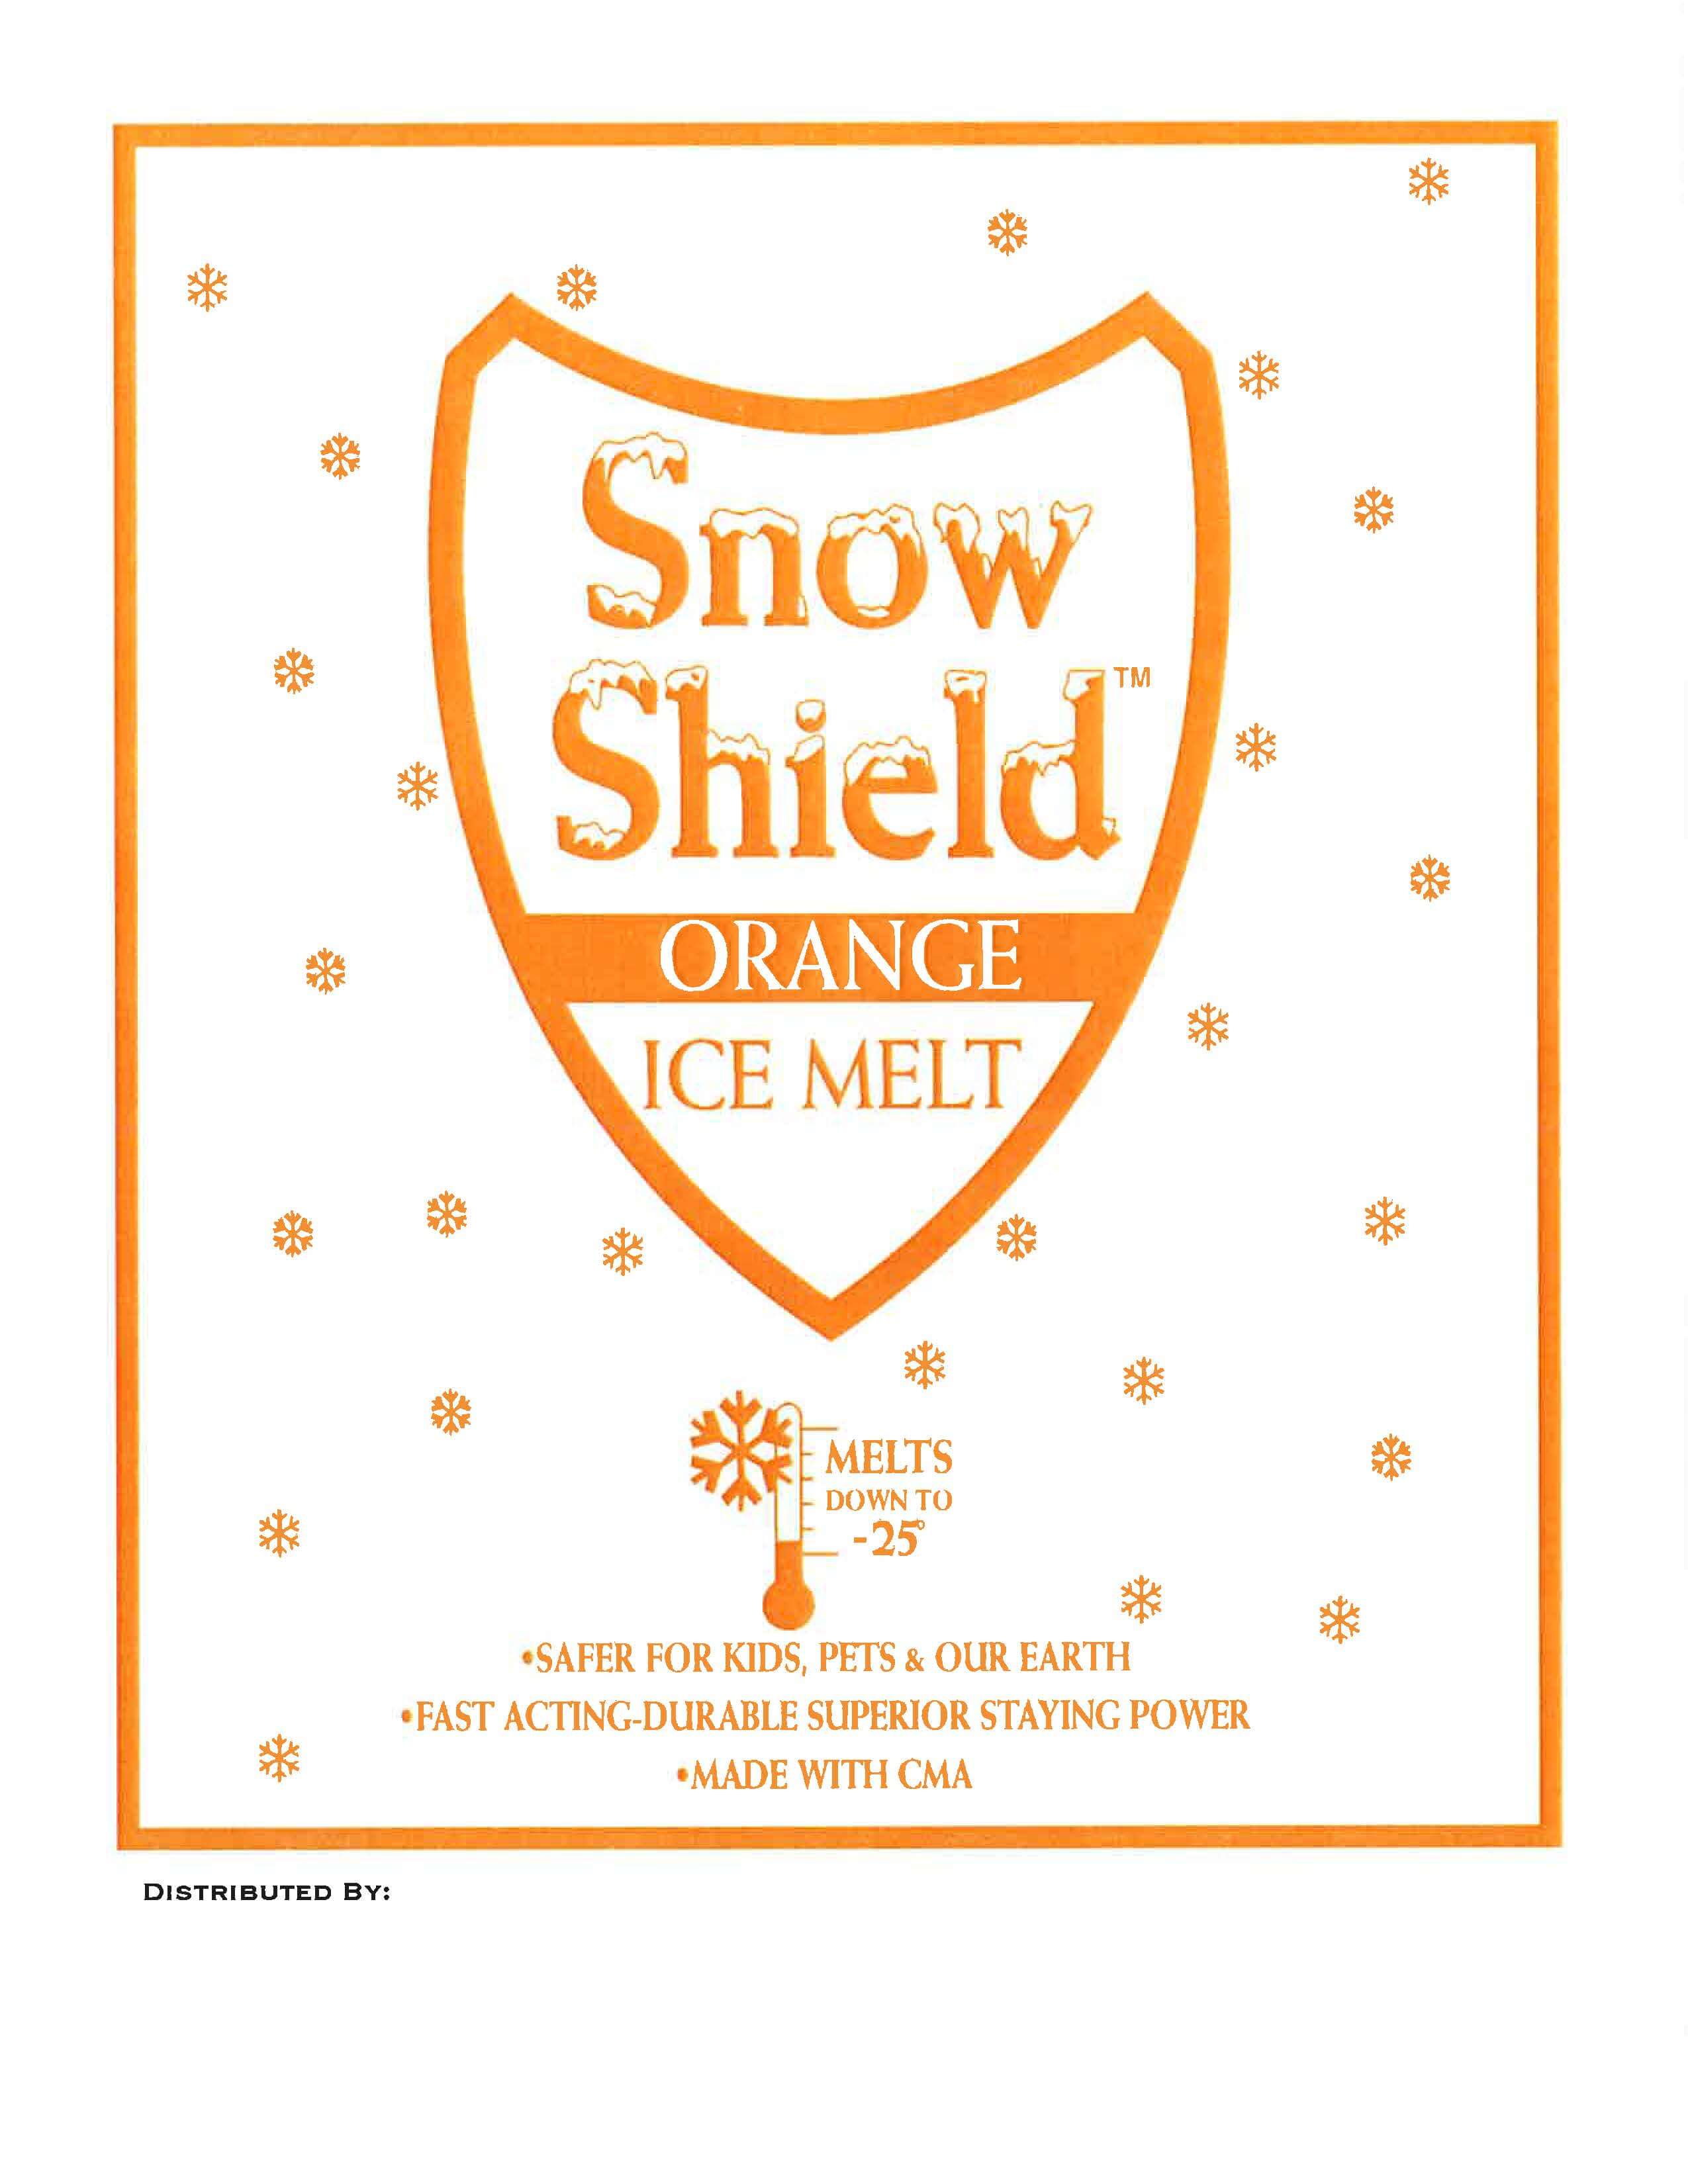 Snow Shield Orange